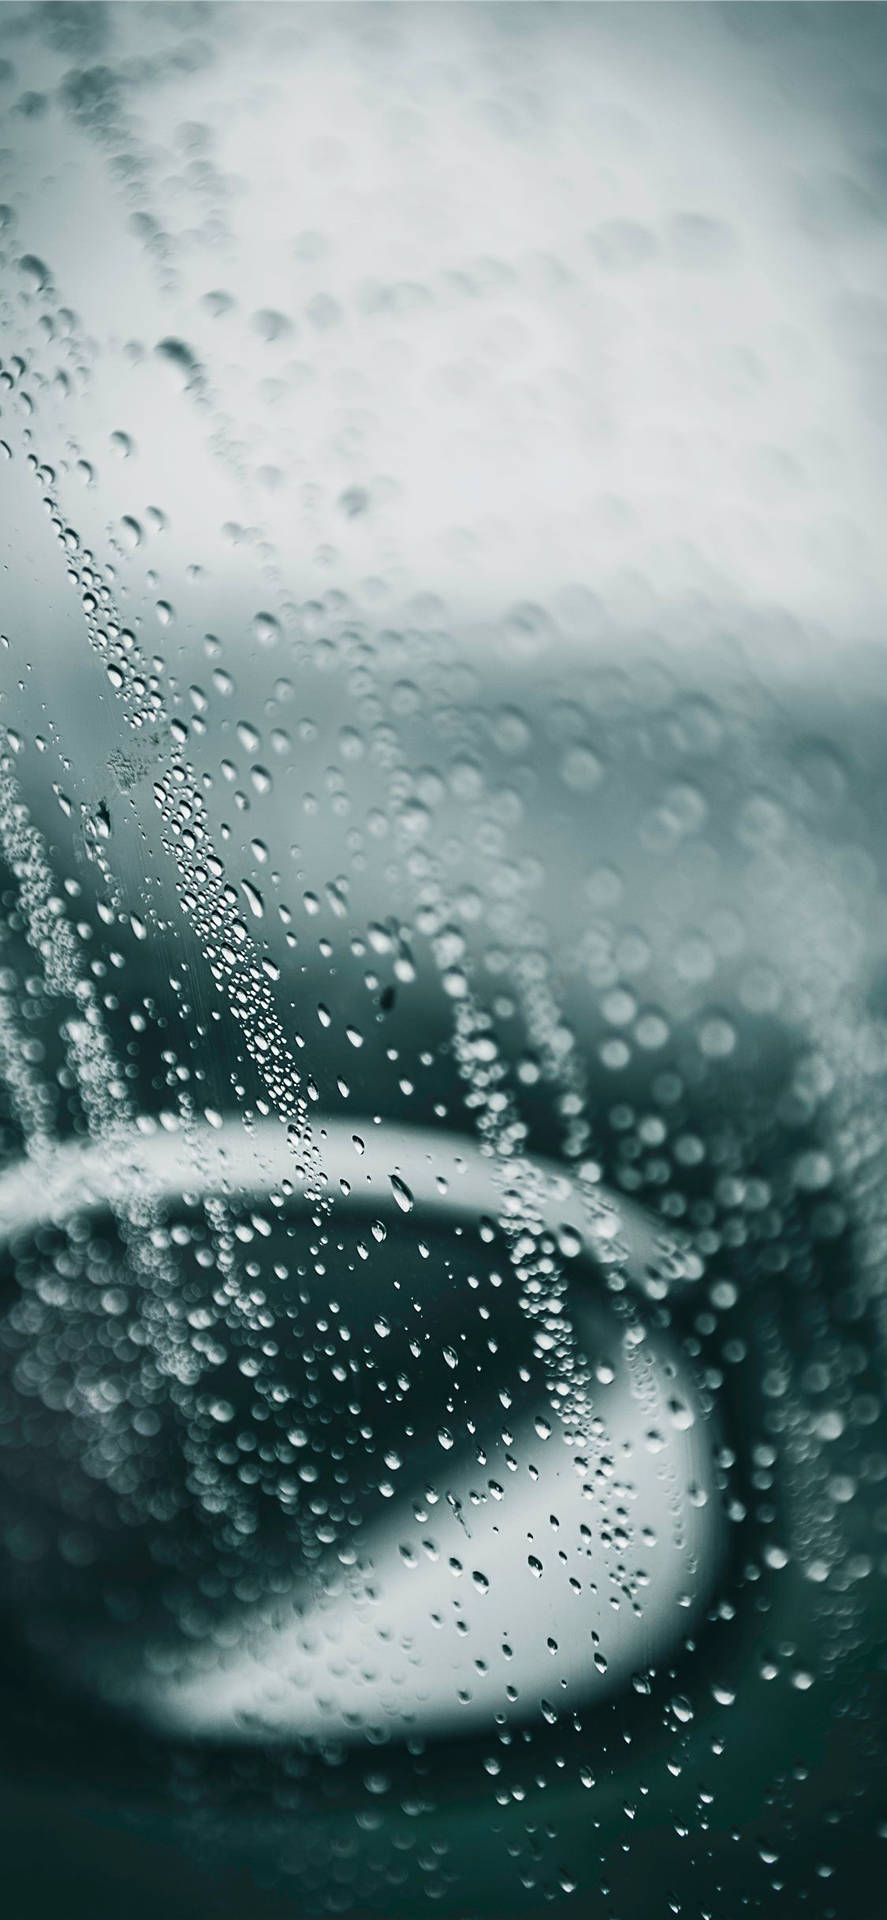 Nyd de smukke regn med din Iphone Wallpaper